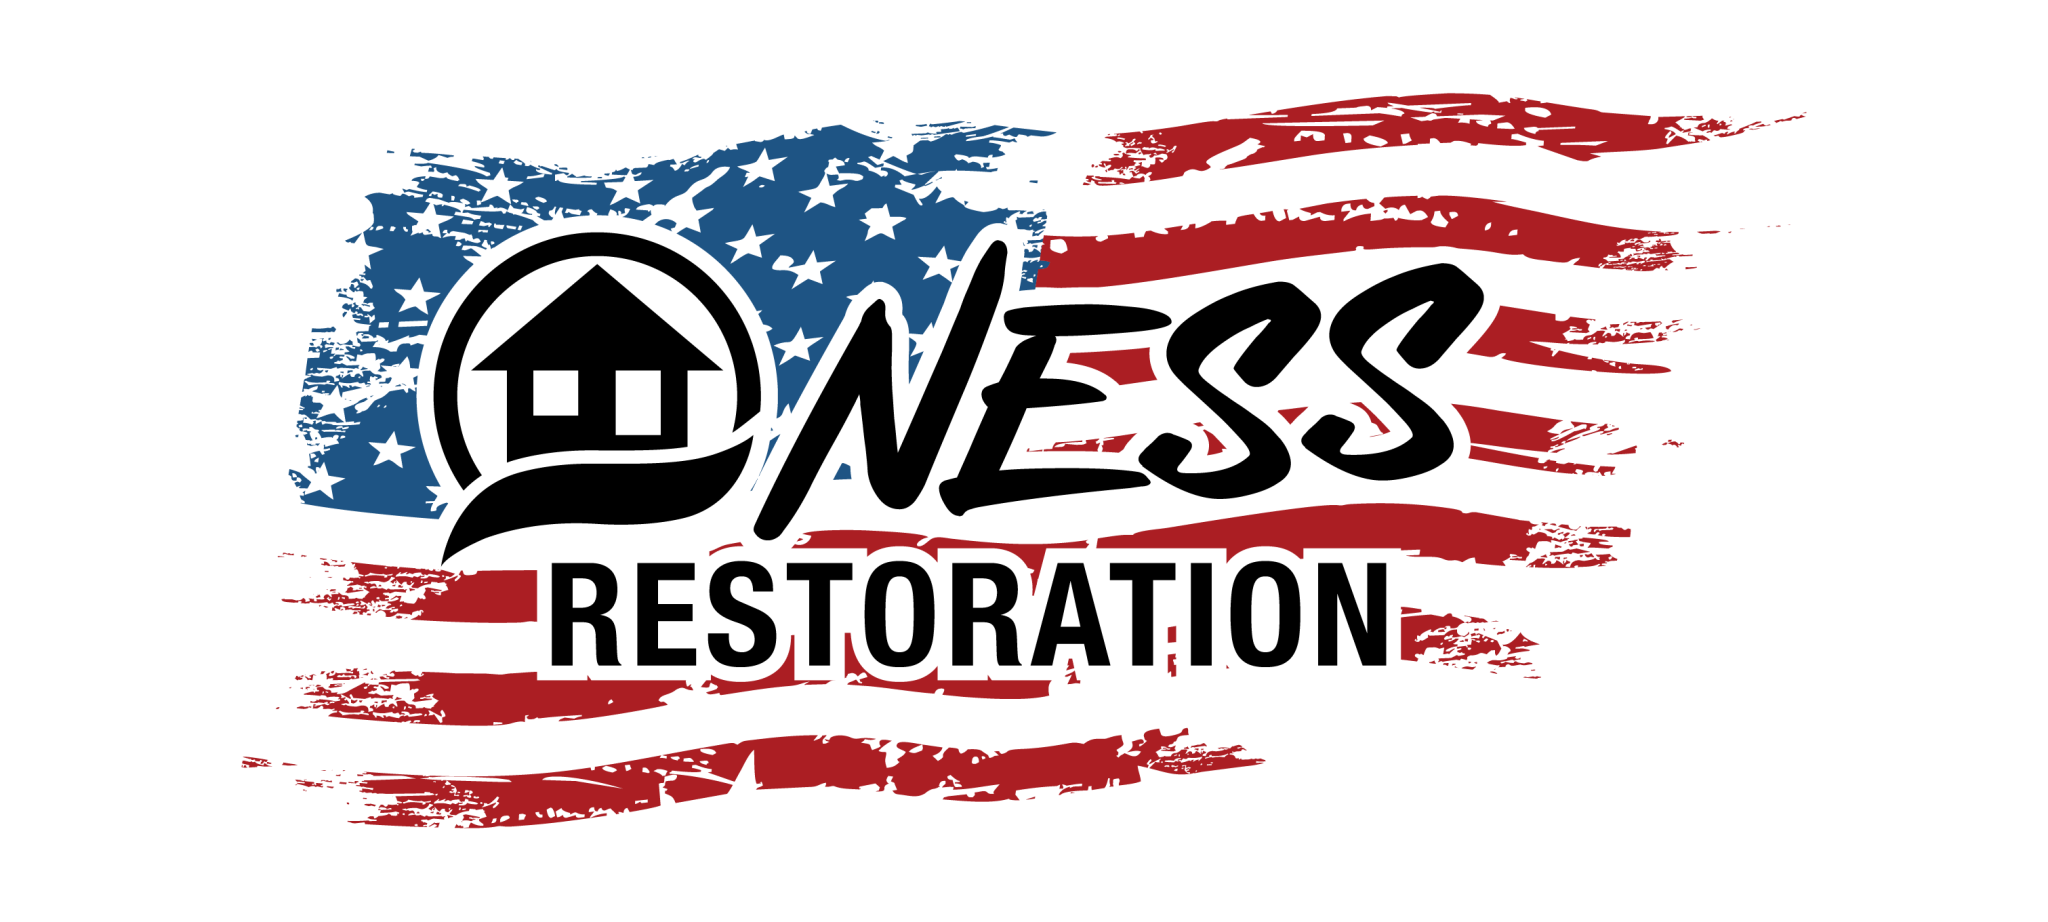 Ness Restoration Remediation Idaho Logo